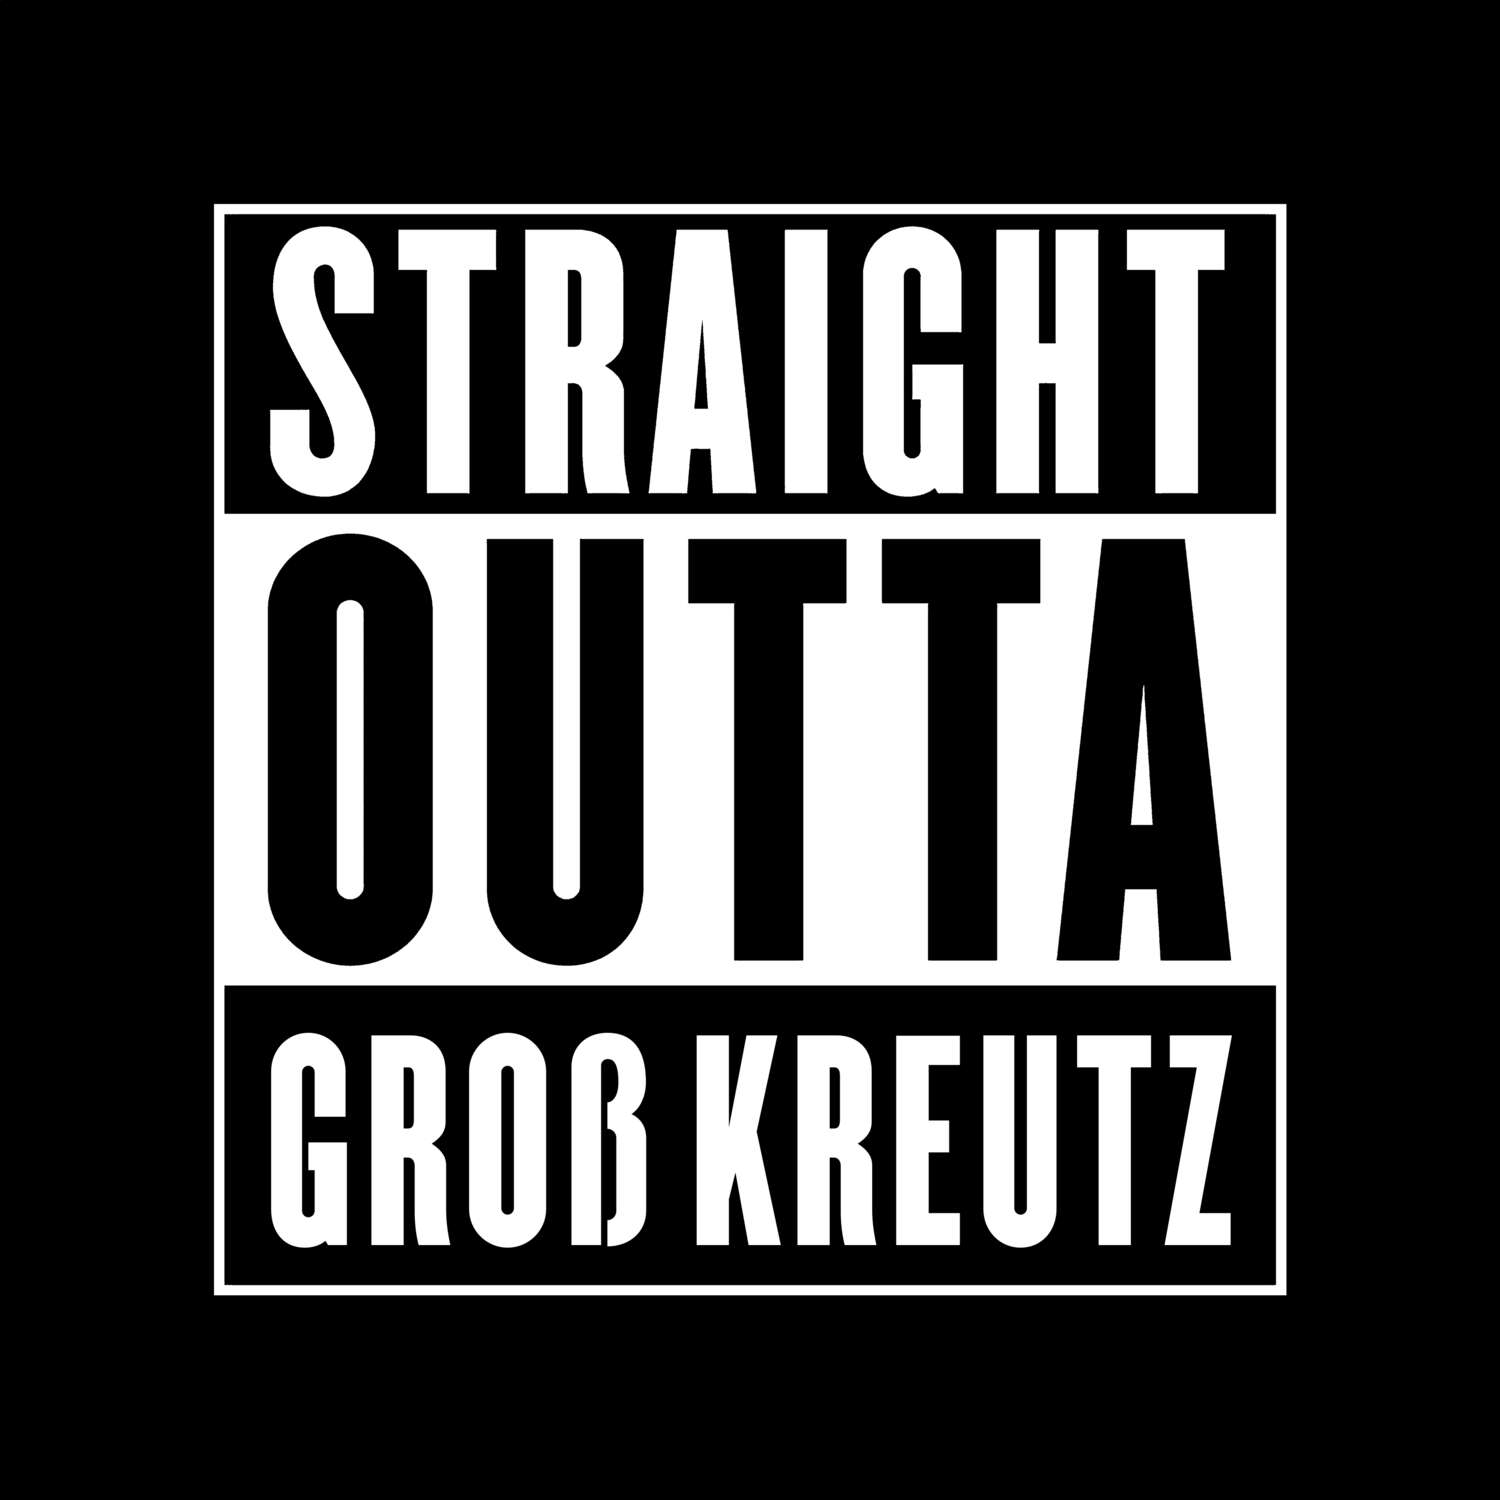 Groß Kreutz T-Shirt »Straight Outta«